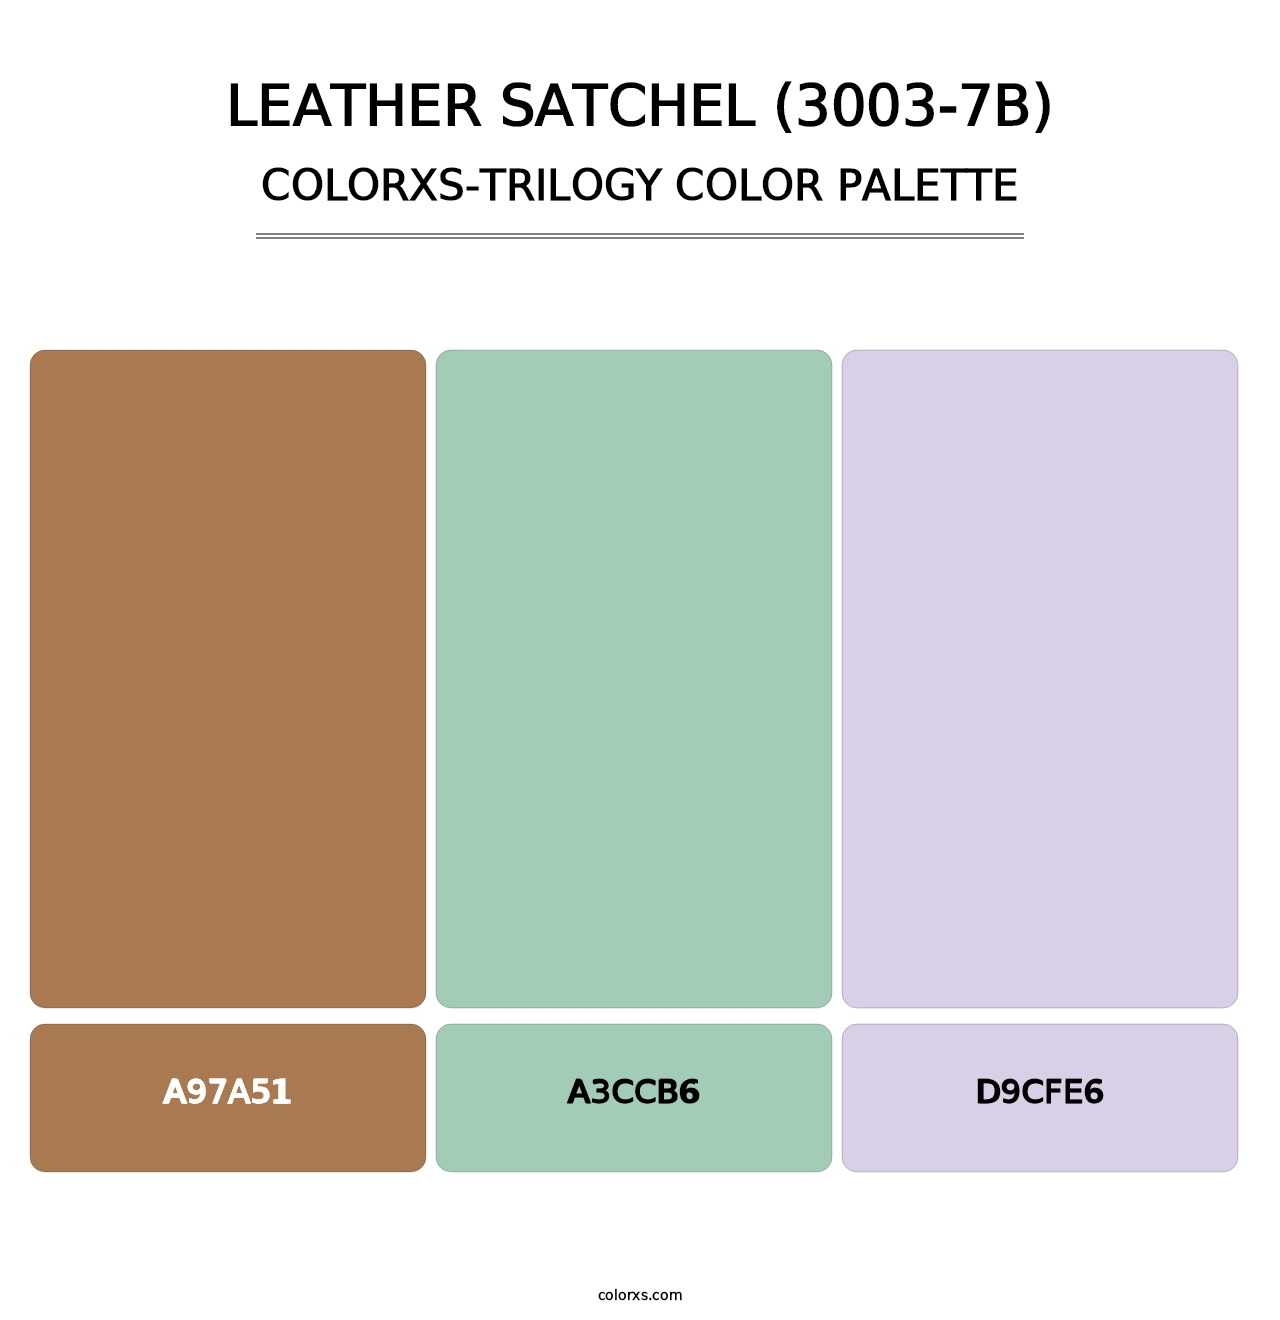 Leather Satchel (3003-7B) - Colorxs Trilogy Palette